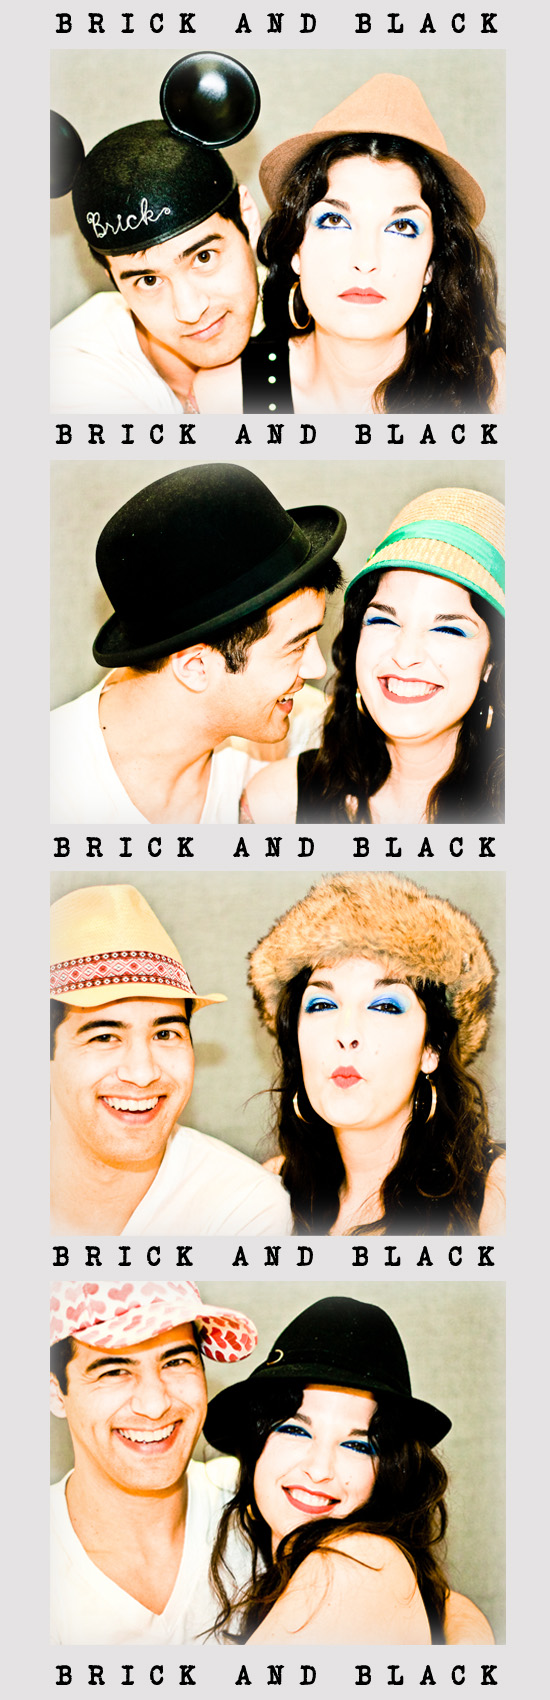 brickandblack-hats-photo-booth